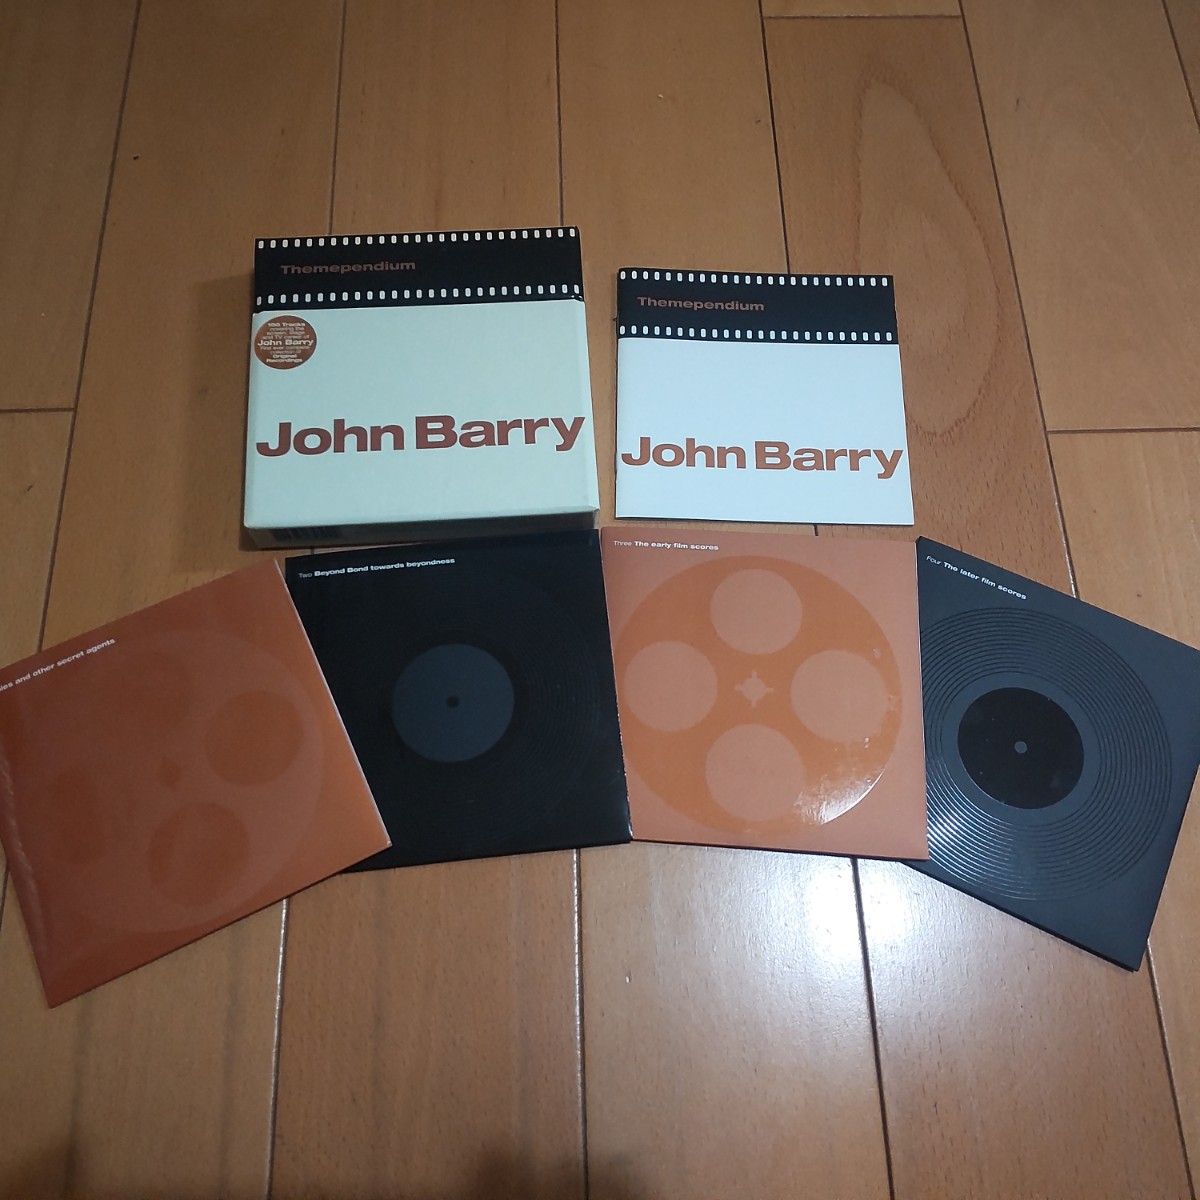 ジョン・バリー テーマペンディウム 輸入盤 中古 CD4枚組BOX 美品